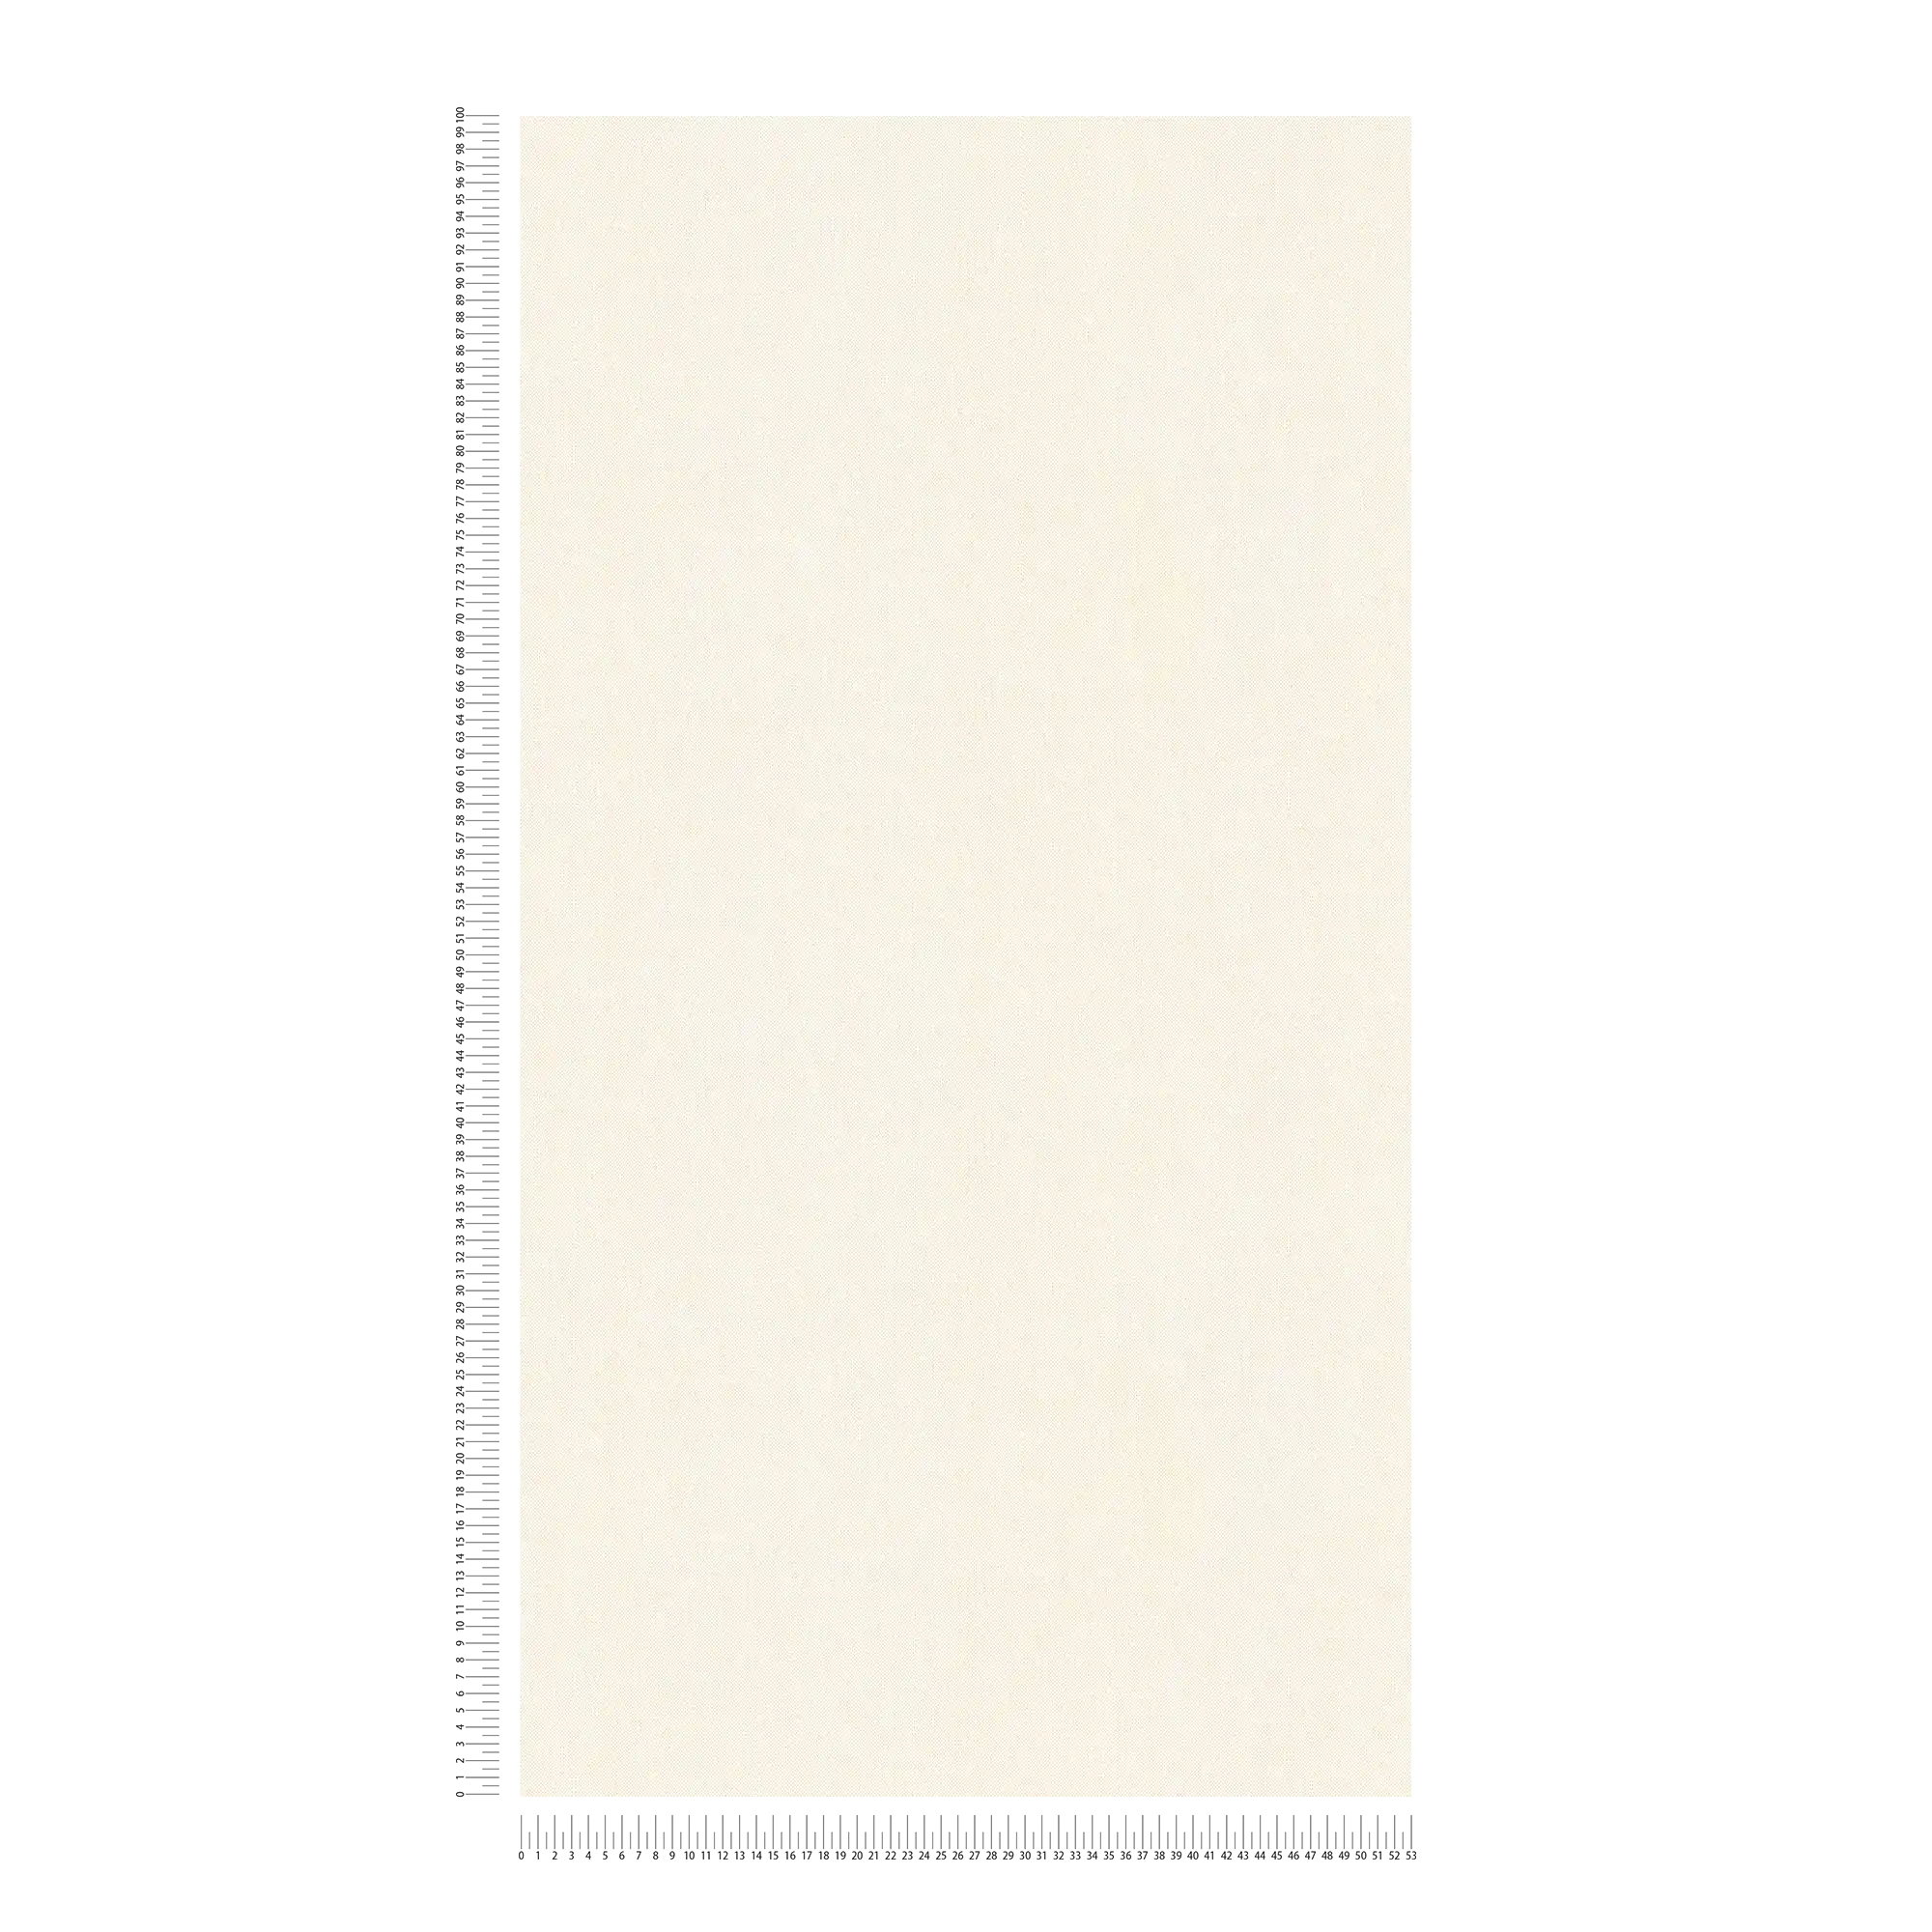             Papier peint Vintage blanc & mat avec structure textile - blanc, crème
        